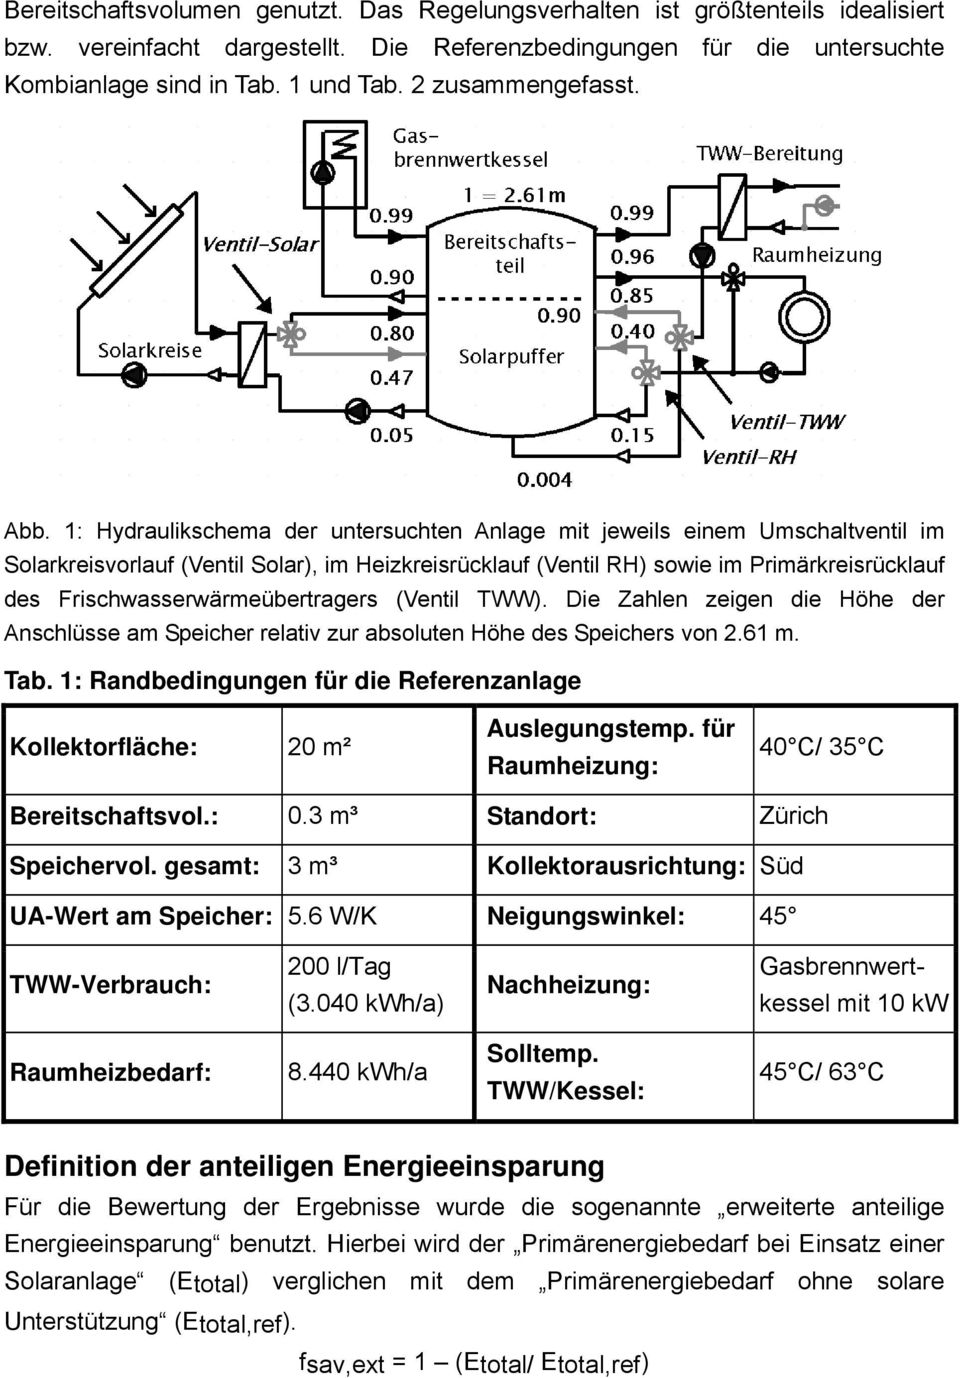 1: Hydraulikschema der untersuchten Anlage mit jeweils einem Umschaltventil im Solarkreisvorlauf (Ventil Solar), im Heizkreisrücklauf (Ventil RH) sowie im Primärkreisrücklauf des